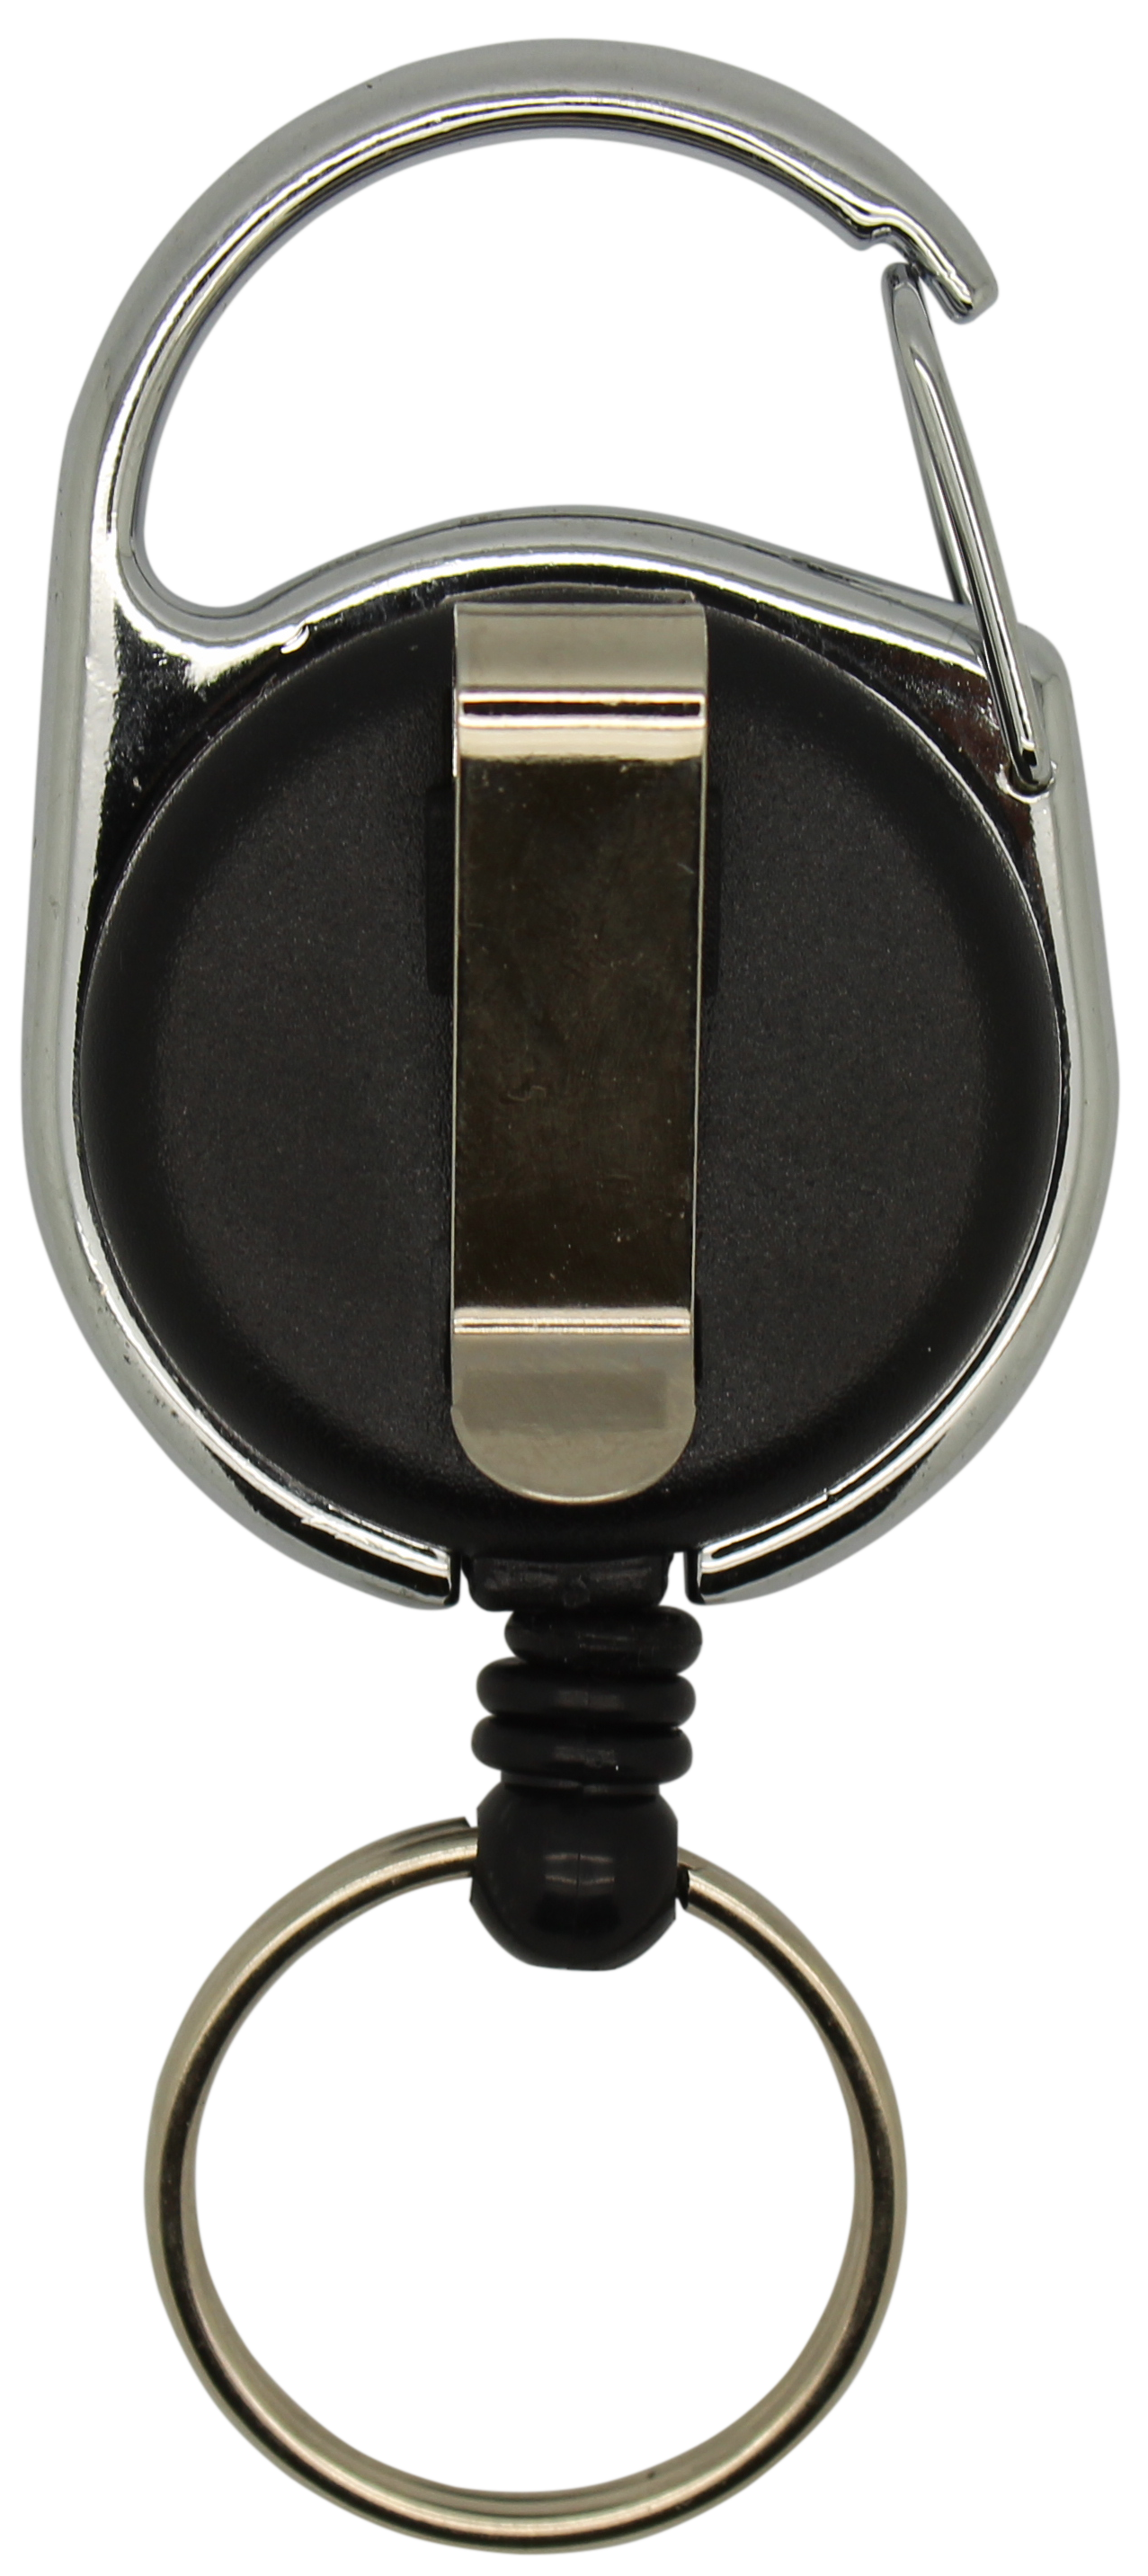 Jojo rund, vollfarbig schwarz, Karabinerhaken, Schlüsselring, Nylonschnur: 60 cm 